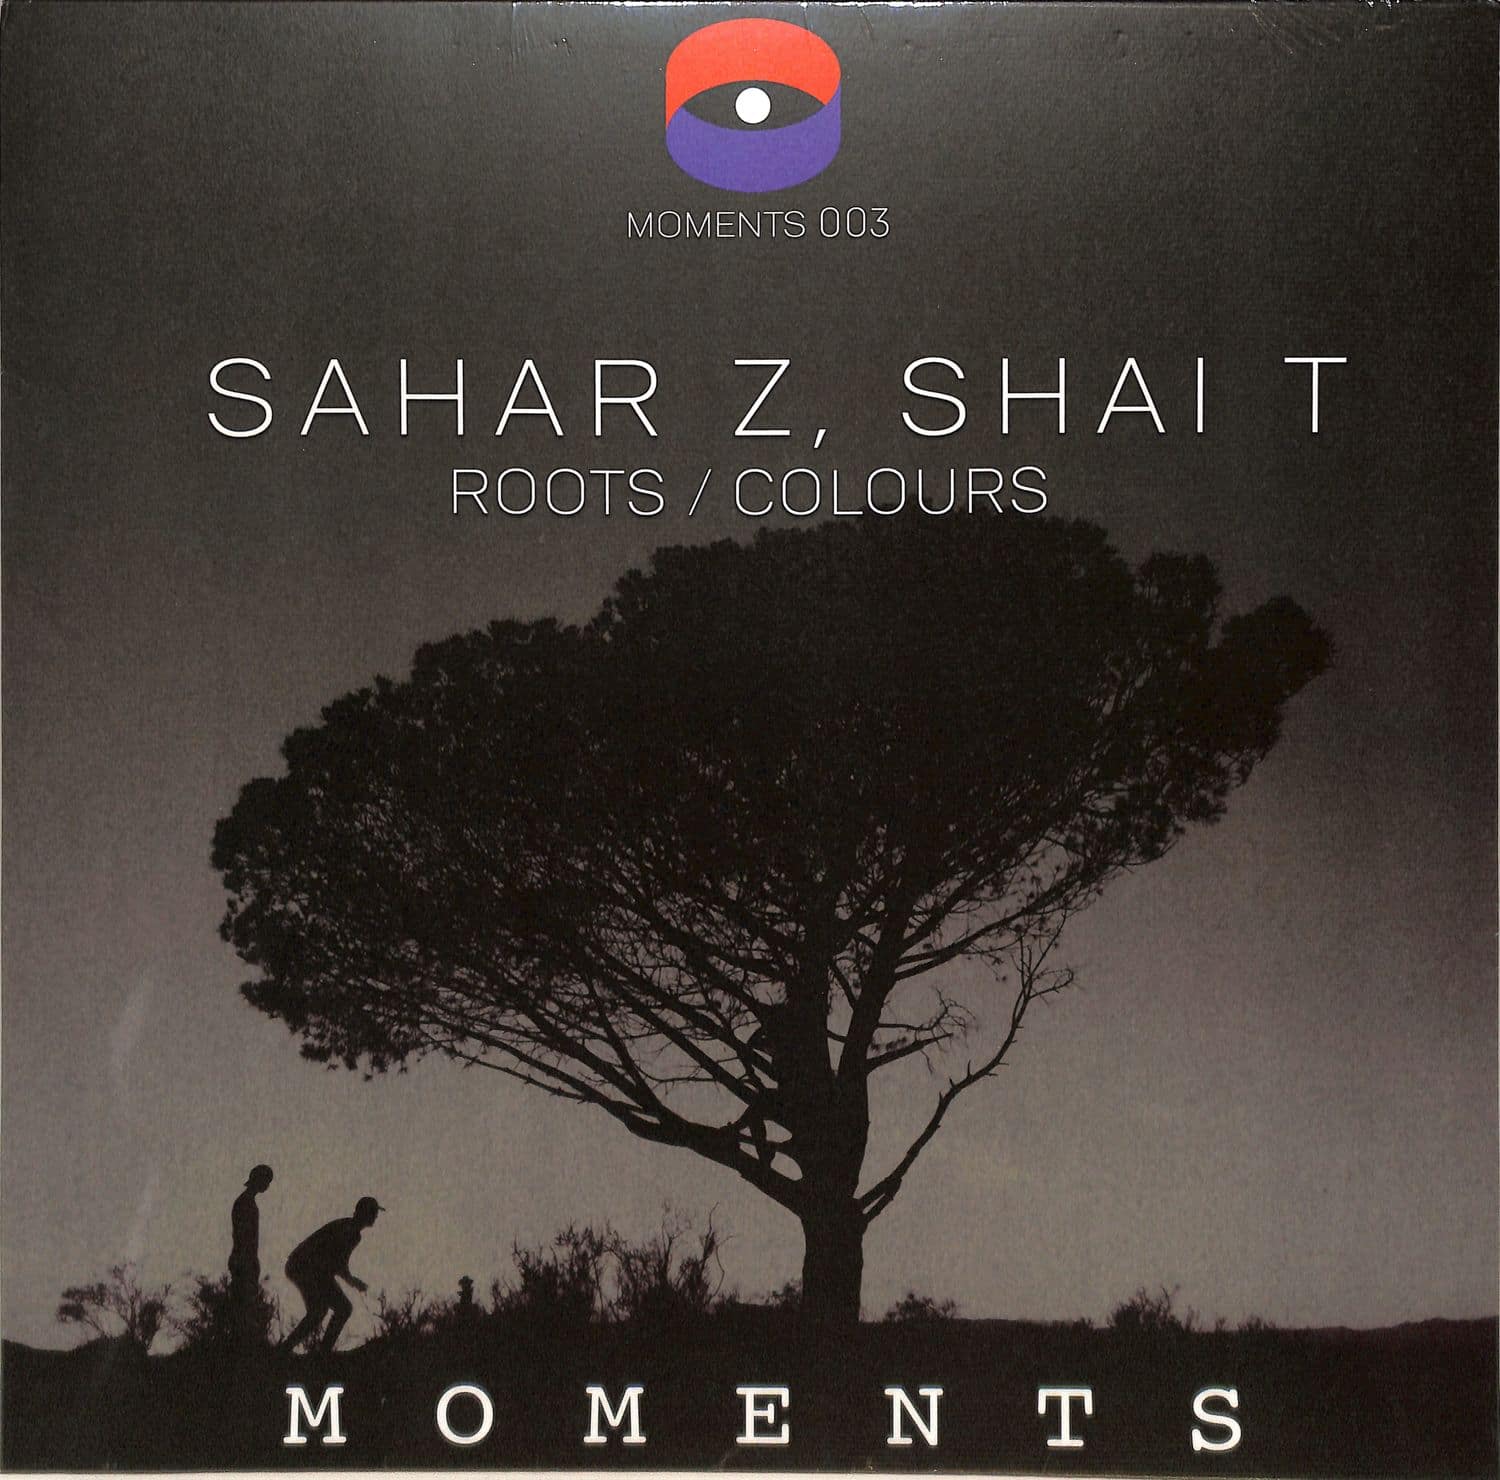 Sahar Z Shai T - ROOTS / COLOURS